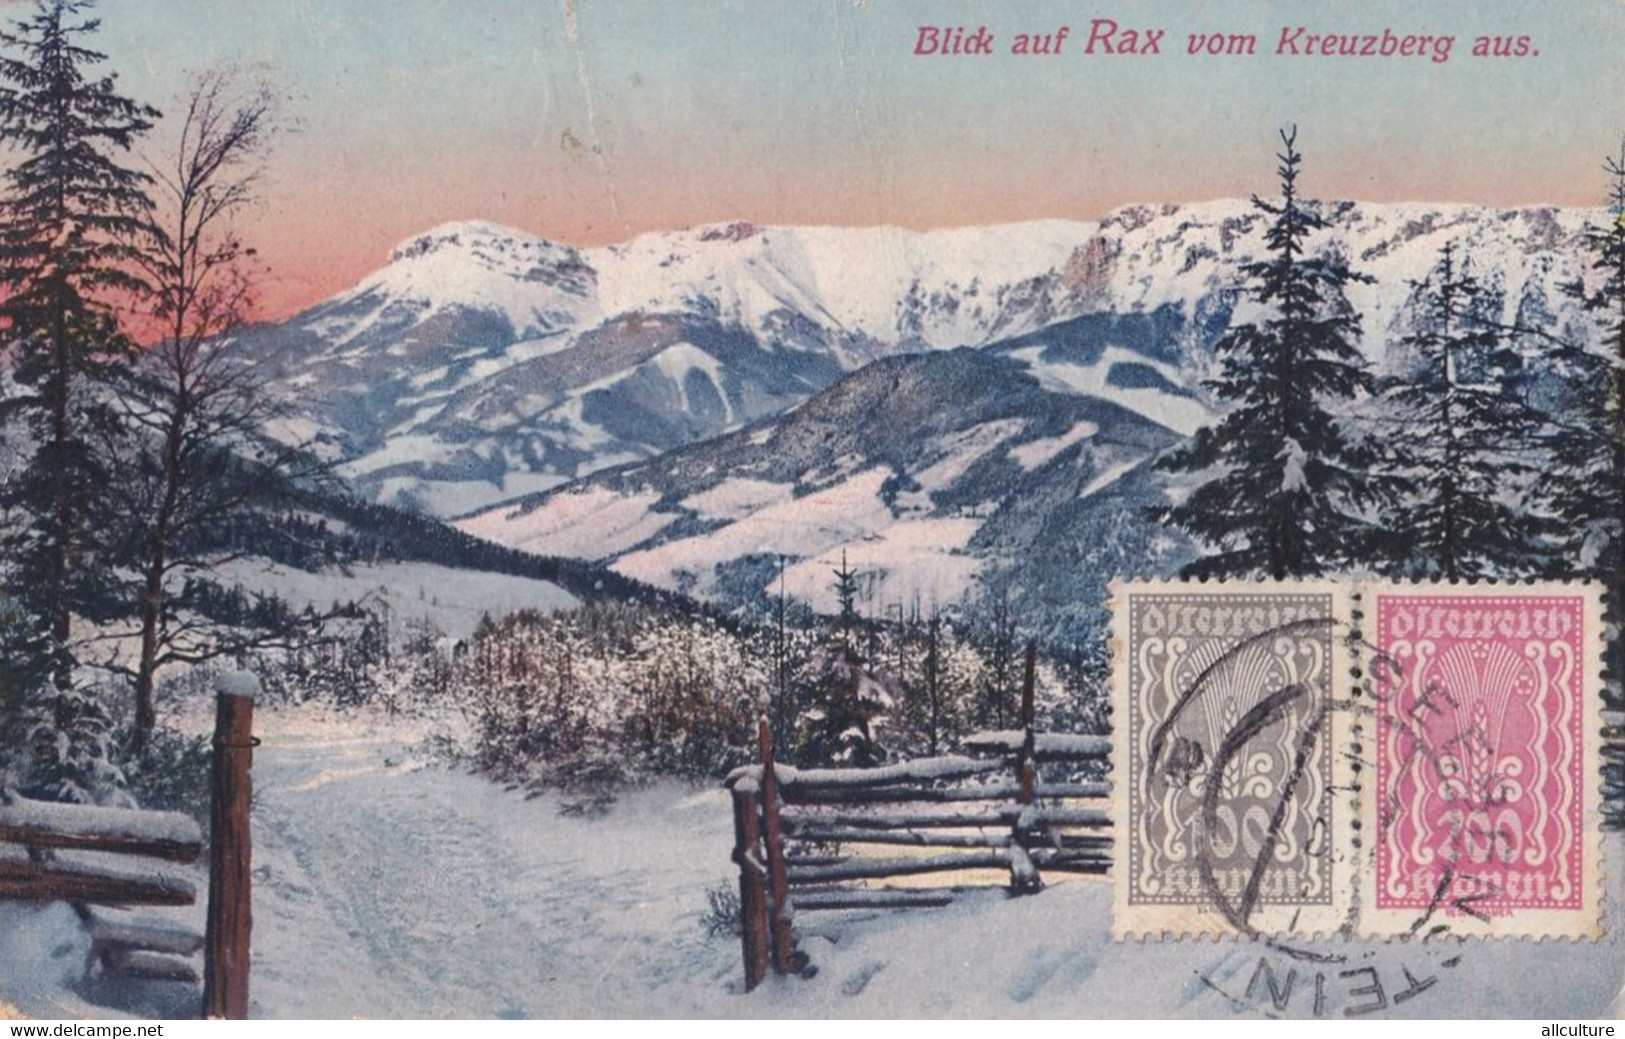 A4059-  Blick Auf Rax Vom Kreuzberg Aus, Osterreich Seebenstein 1923 Austria Lower Austria Unused Postcard - Raxgebiet